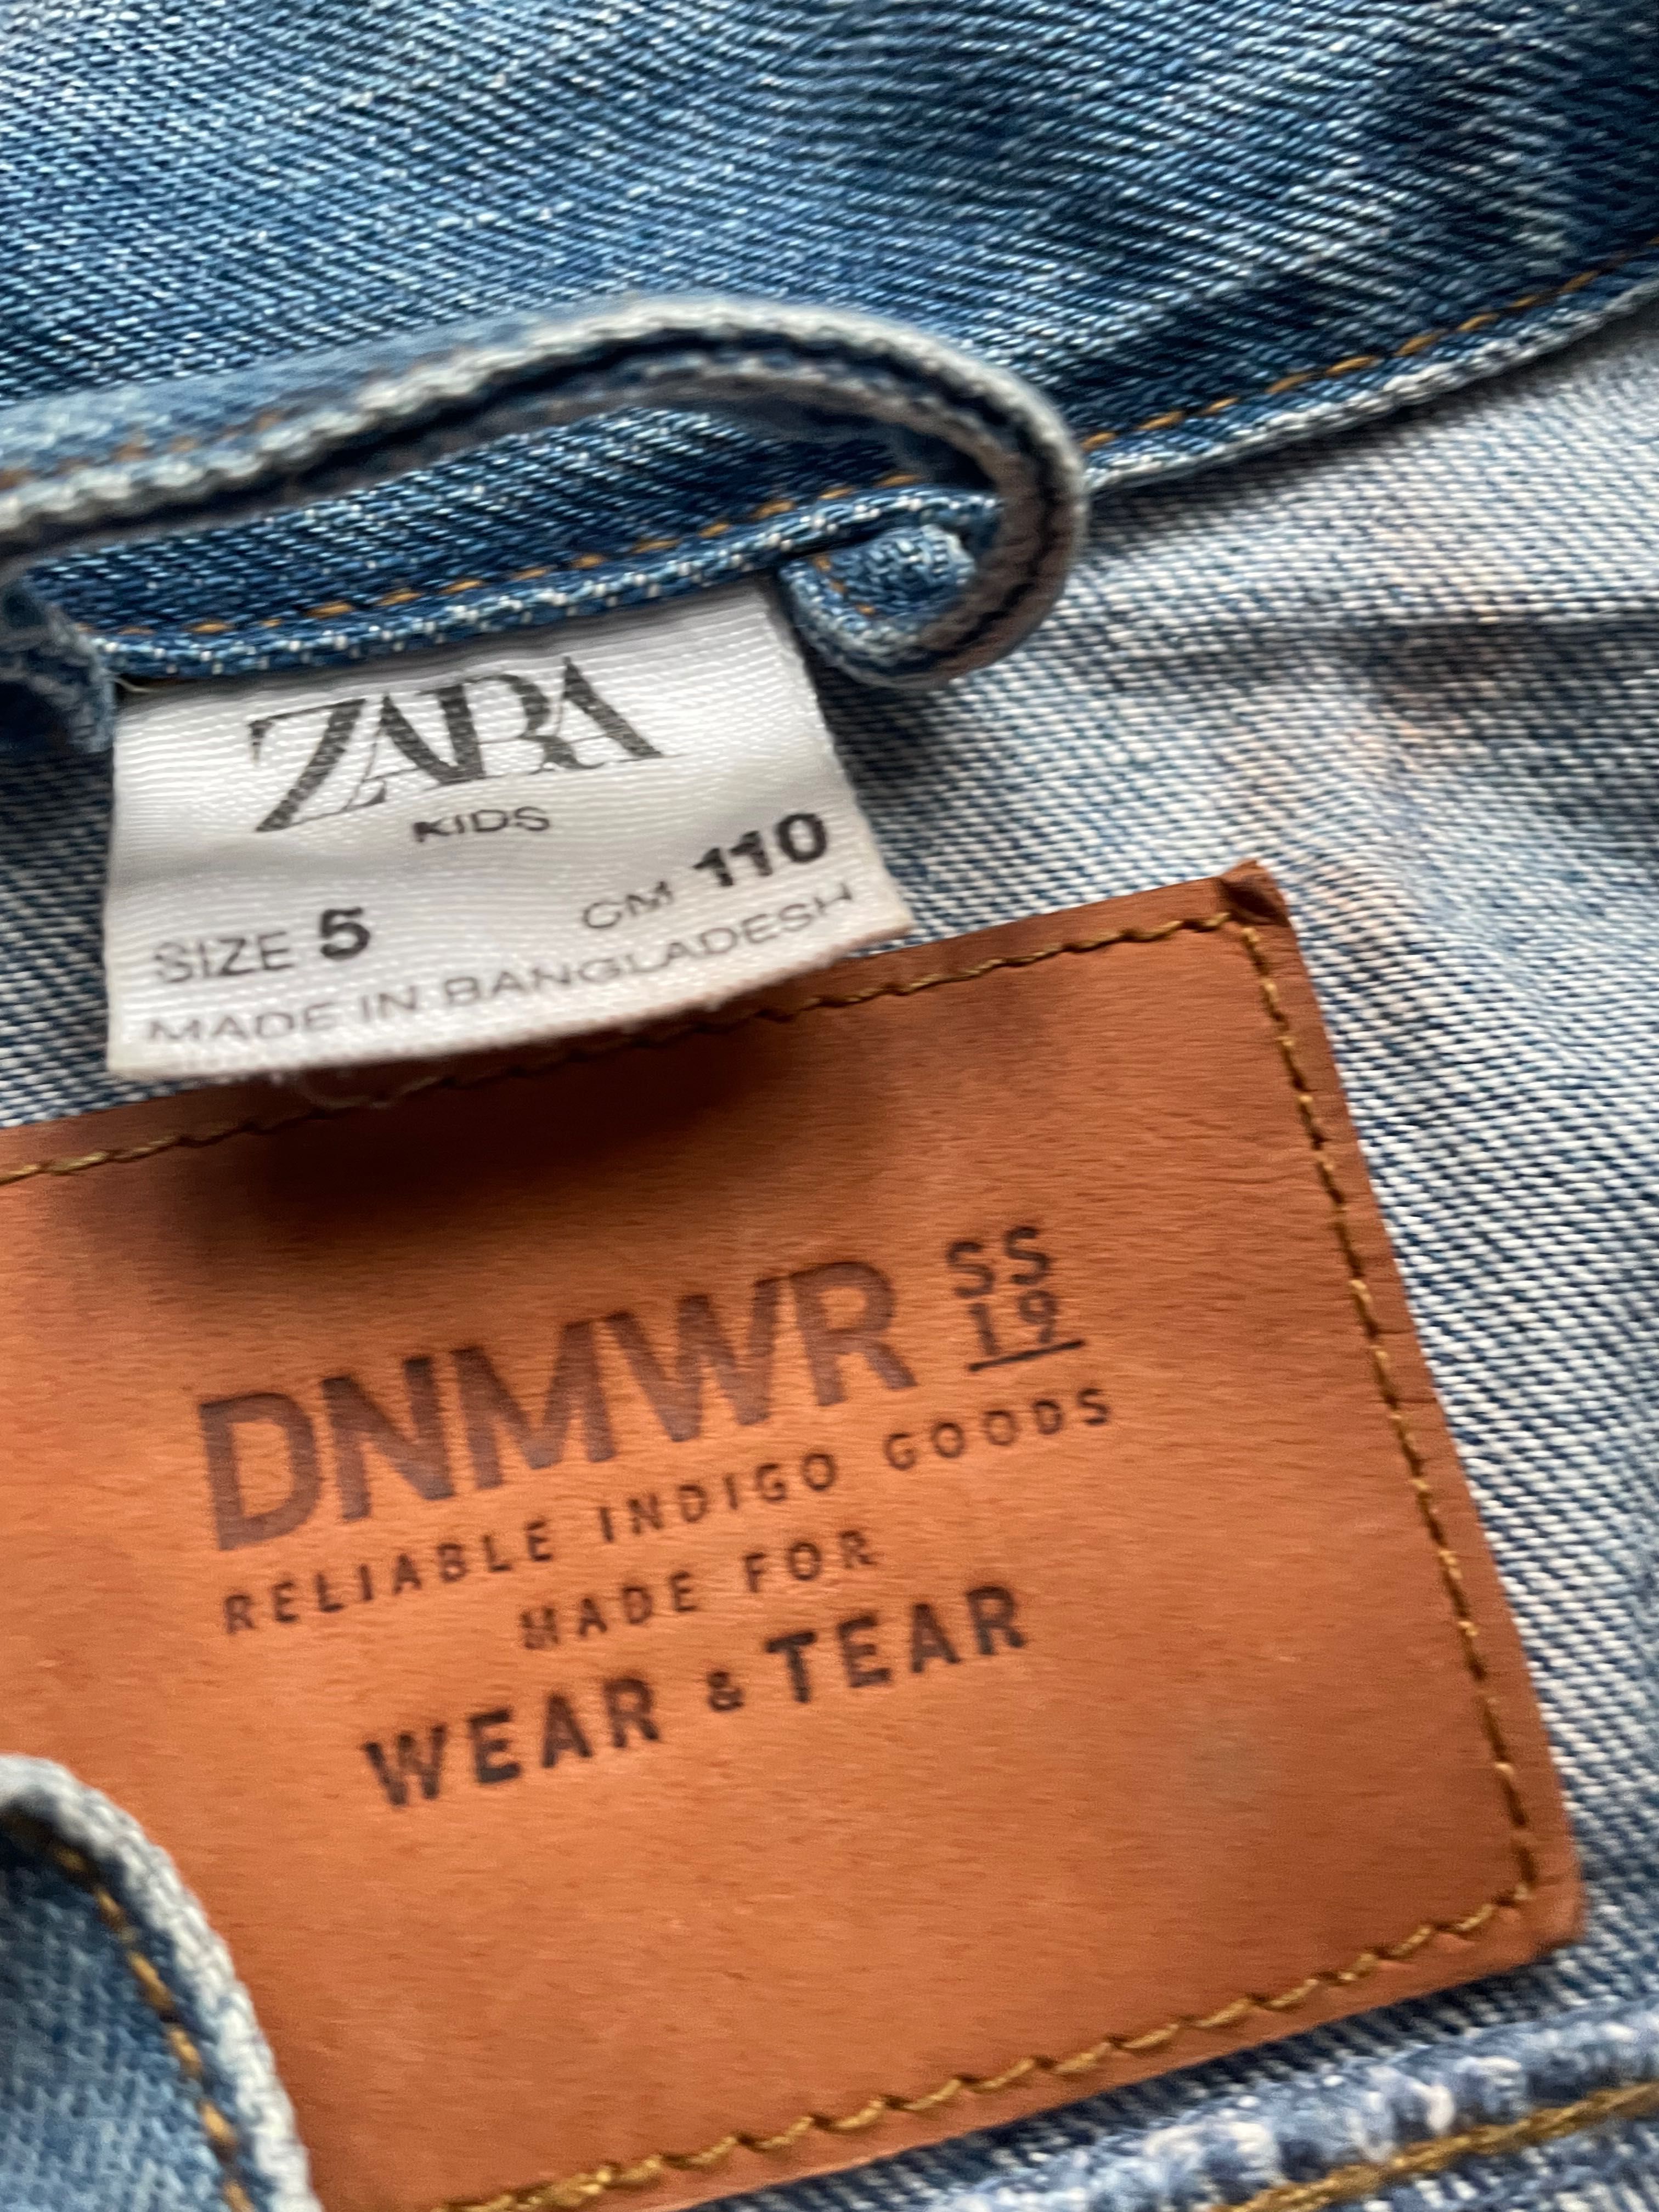 Куртка джинсовая ZARA, на 5 лет, рост 110